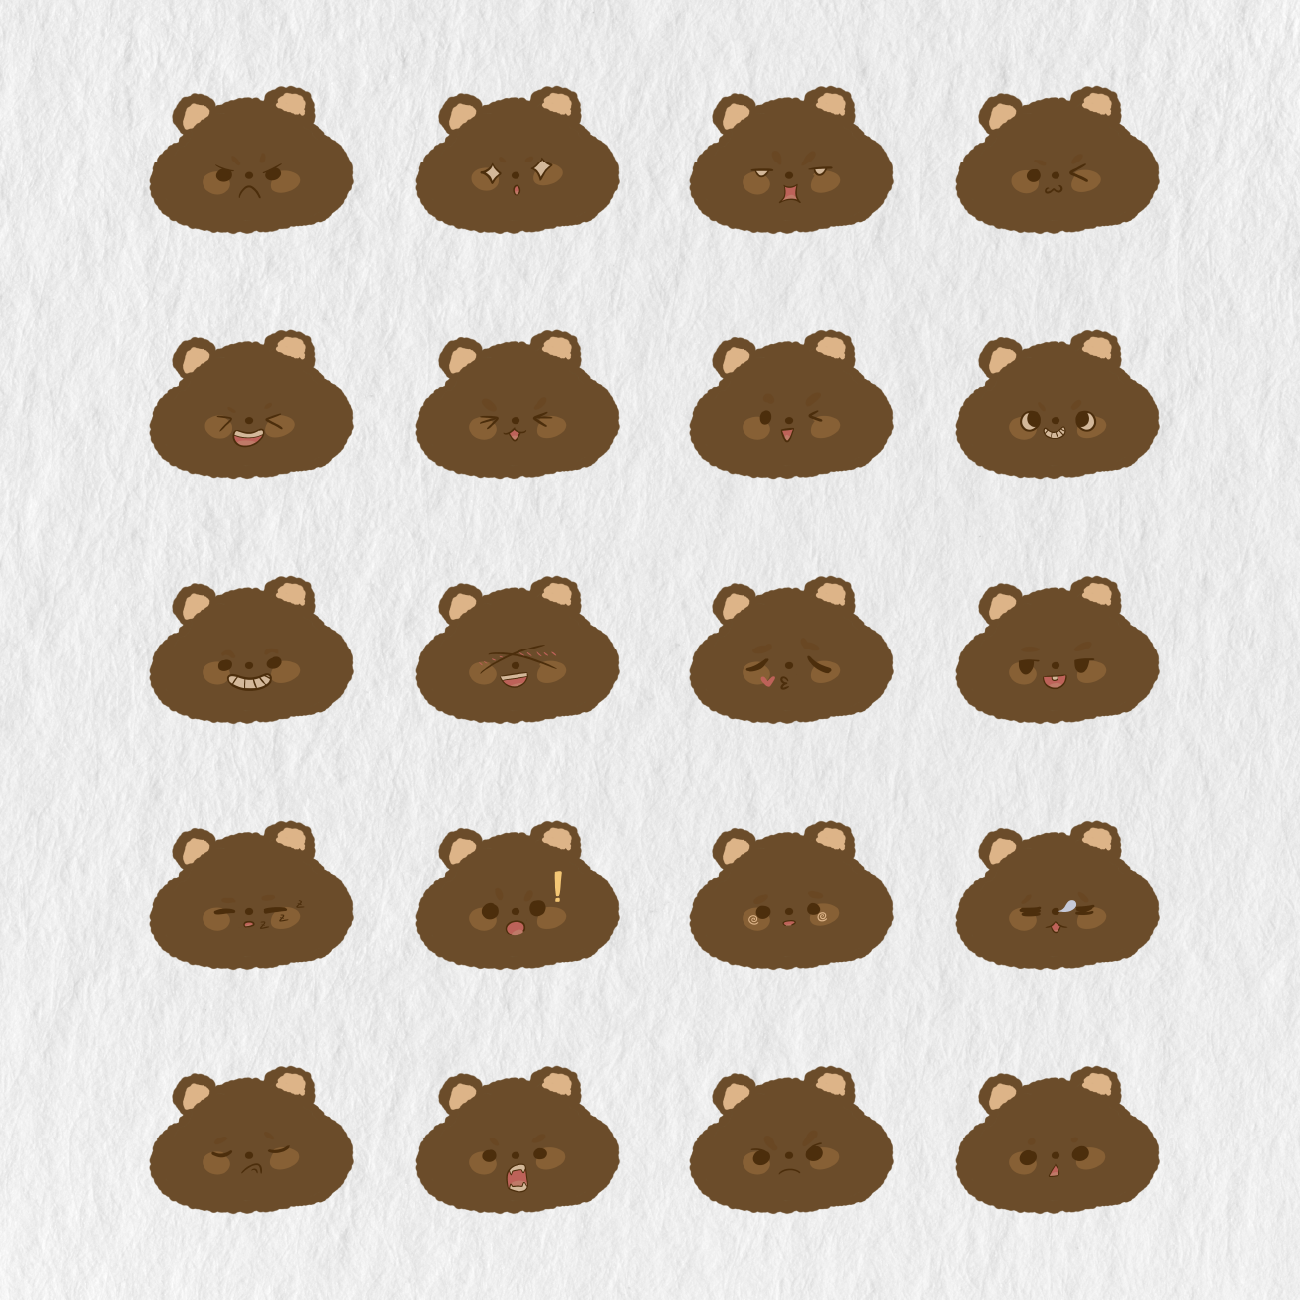 100 Teddy Bear Emoji Digital Stickers - Stationery Pal